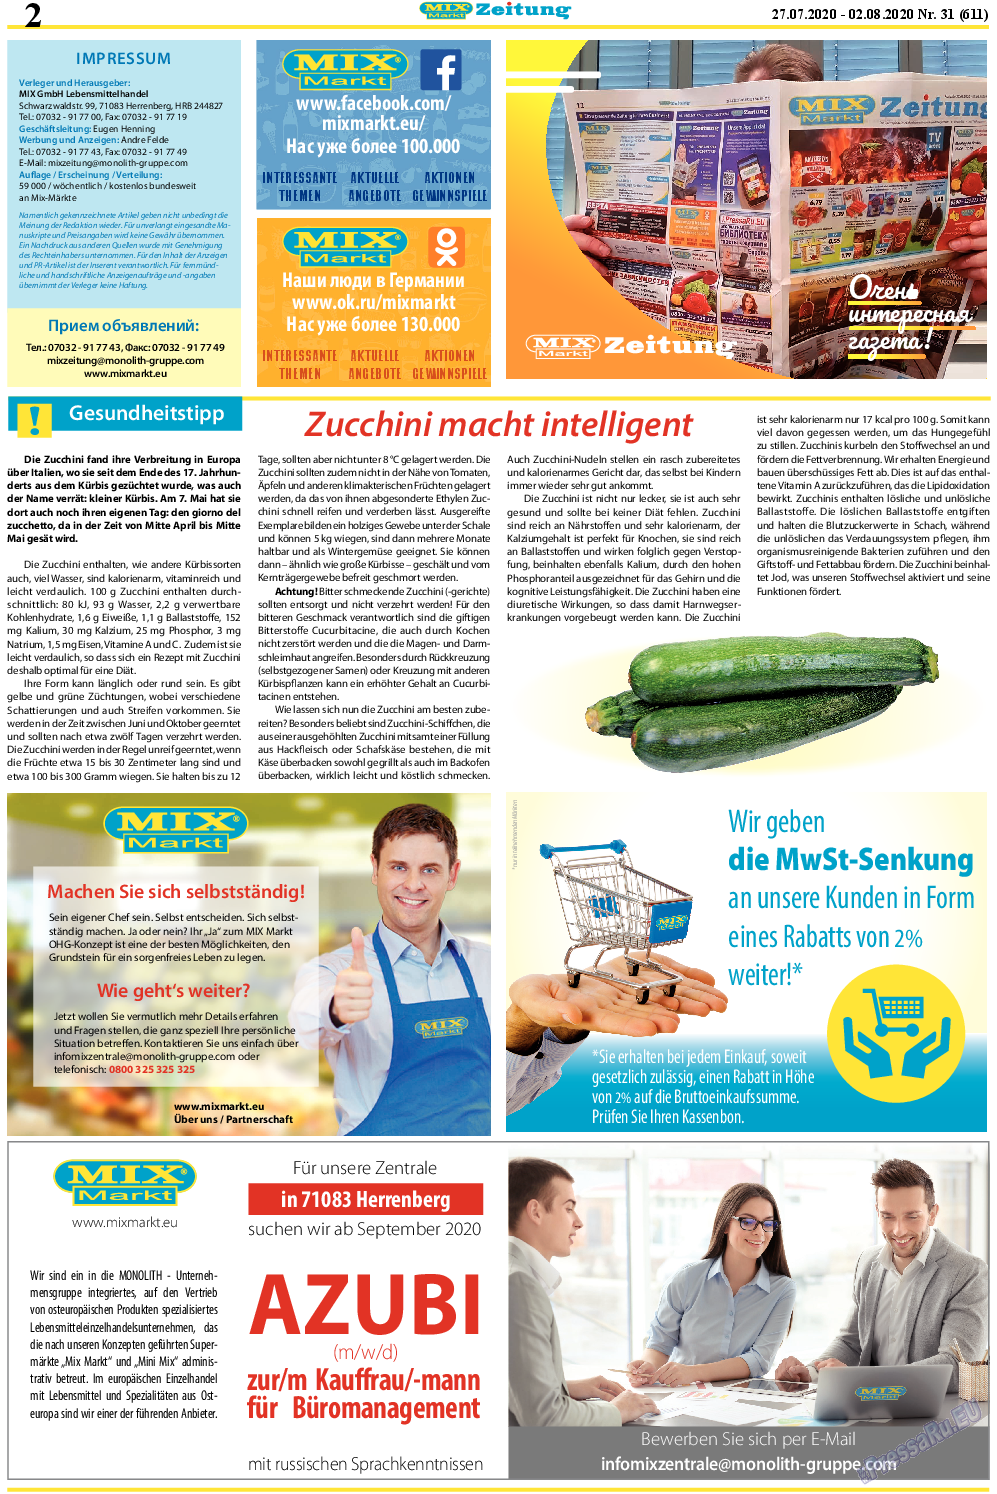 MIX-Markt Zeitung (газета). 2020 год, номер 31, стр. 2